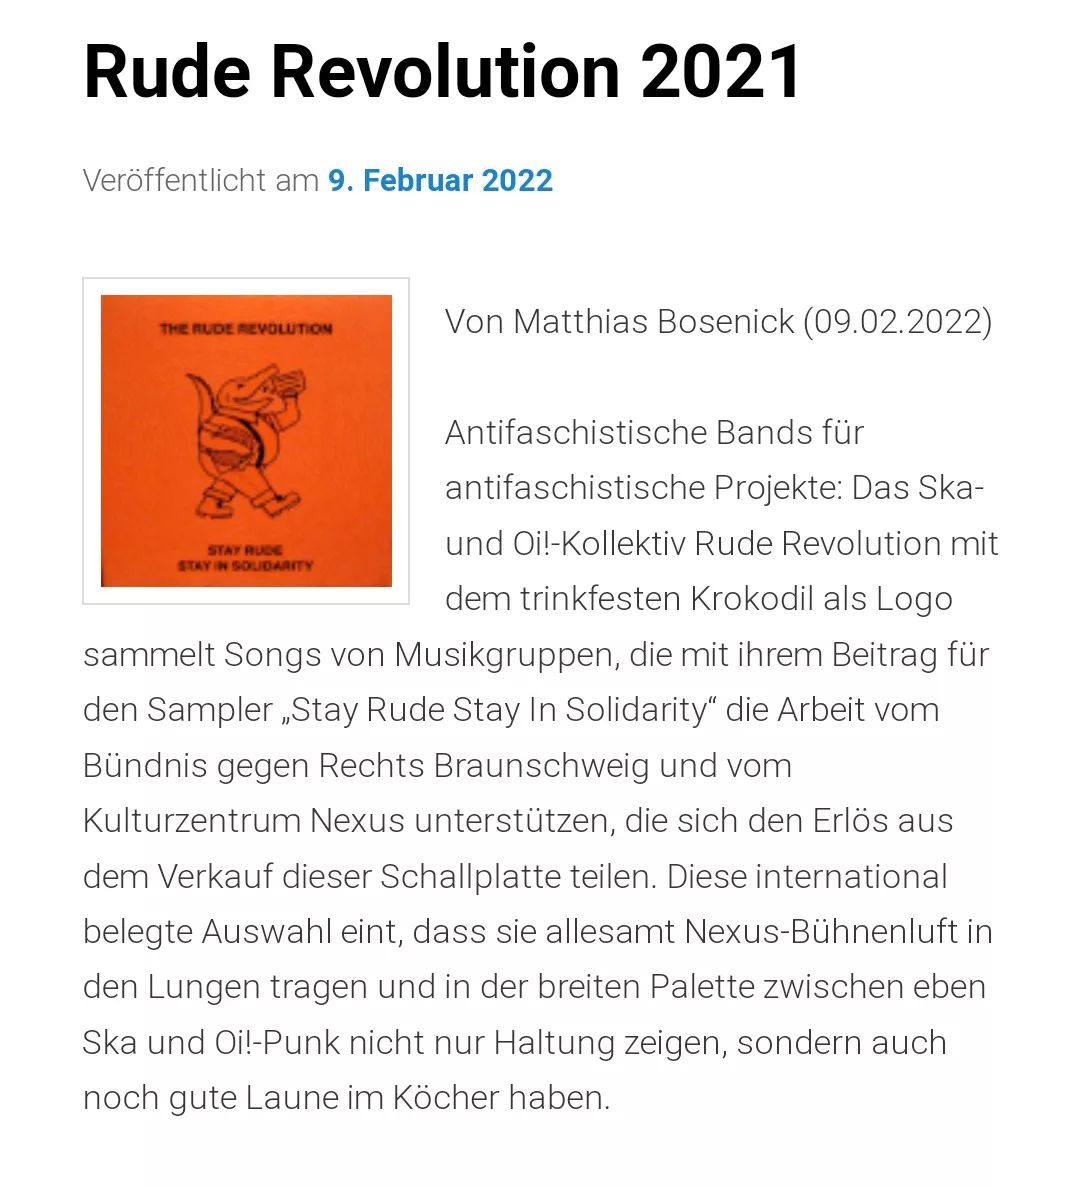 @vanbauseneick hat ein ausführliches Review über unseren Soli Sampler "Stay Rude - Stay In Solidarity" geschrieben. Vielen Dank dafür - auch das Intro wird nochmal näher beleuchtet. Gönnt euch das Review und den Sampler!

http://vanbauseneick.de/krautnick/the-rude-revolution-stay-rude-stay-in-solidarity-rude-revolution-2021/

#ruderevolution #Braunschweig #stayrudestayinsolidarity #antifa #workingclassreggae #ska #sampler #solidarity